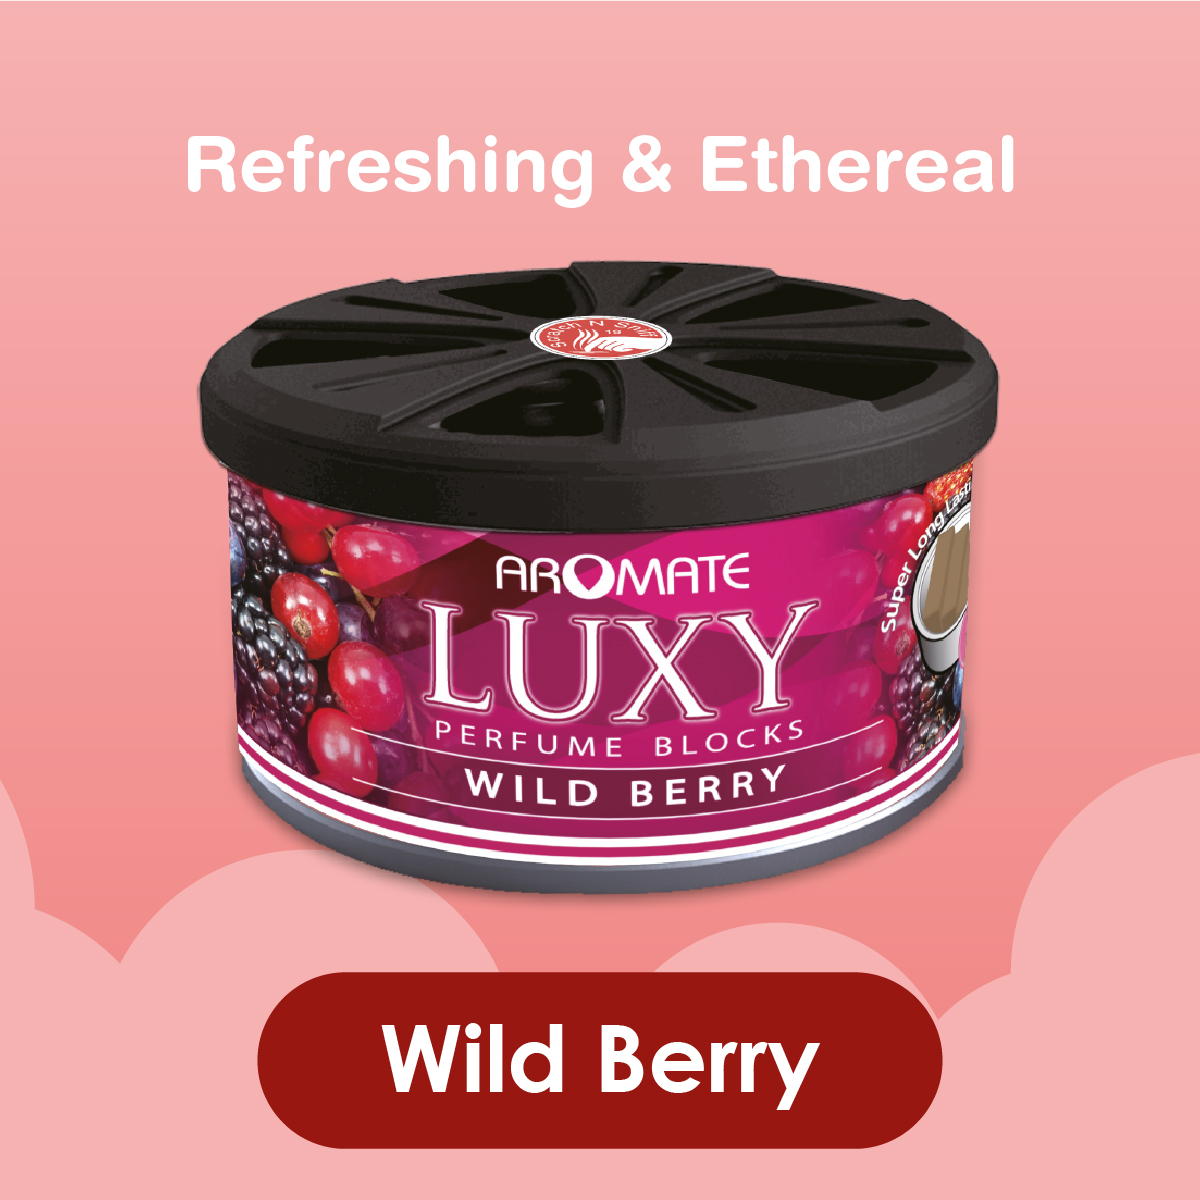 LUXY - Wild Berry